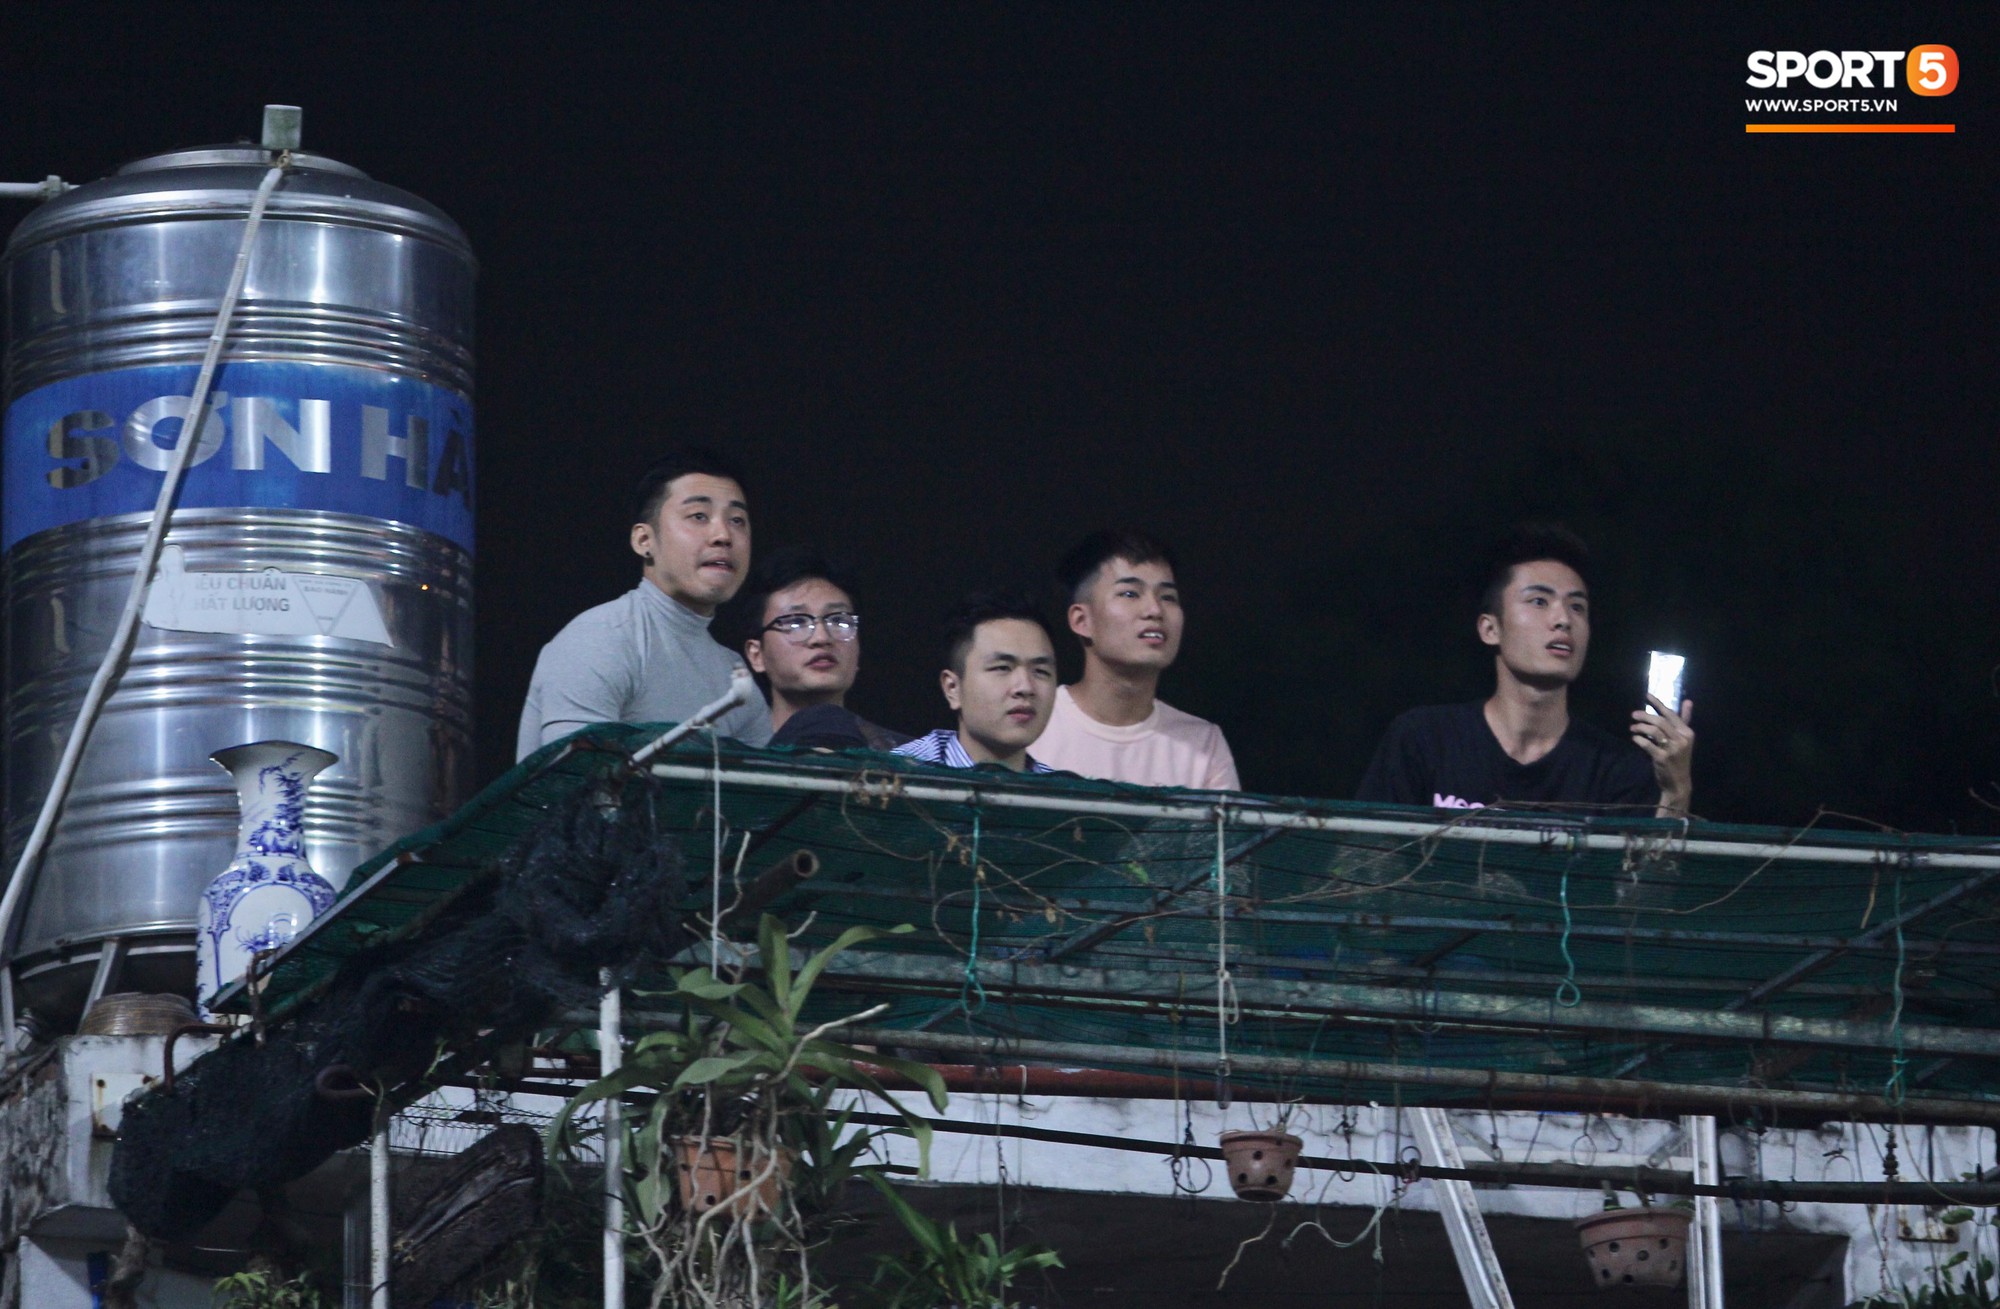 Vì đội tuyển Việt Nam, nhiều CĐV chấp nhận mạo hiểm, vắt vẻo ngồi trên nóc nhà, téc nước - Ảnh 2.